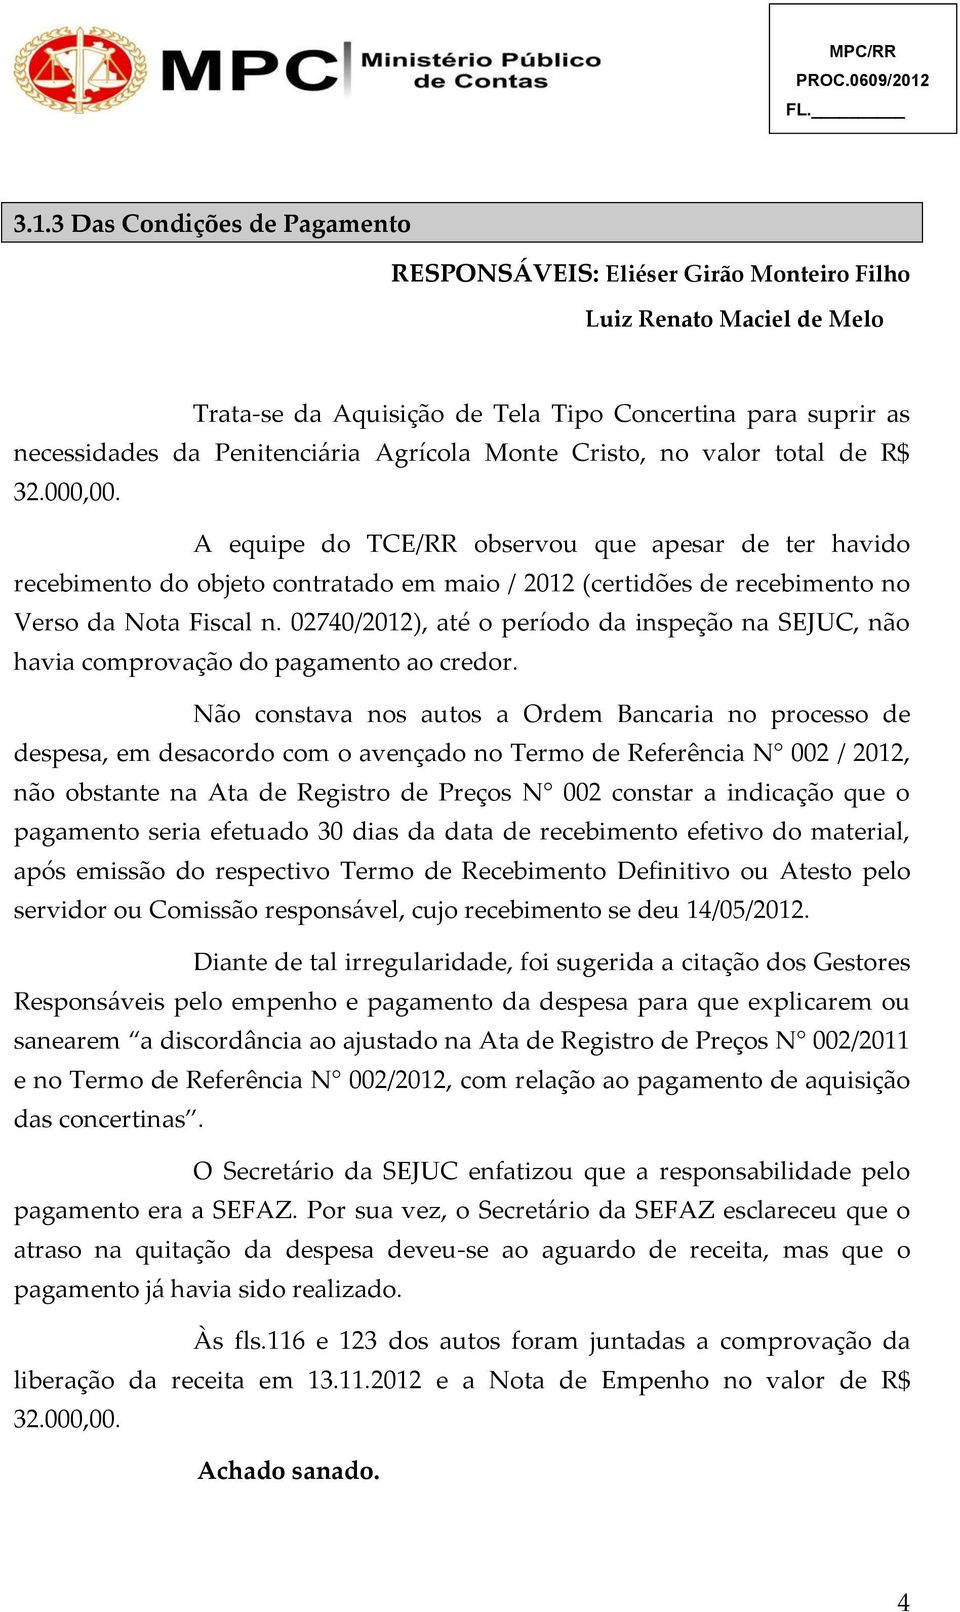 A equipe do TCE/RR observou que apesar de ter havido recebimento do objeto contratado em maio / 2012 (certidões de recebimento no Verso da Nota Fiscal n.